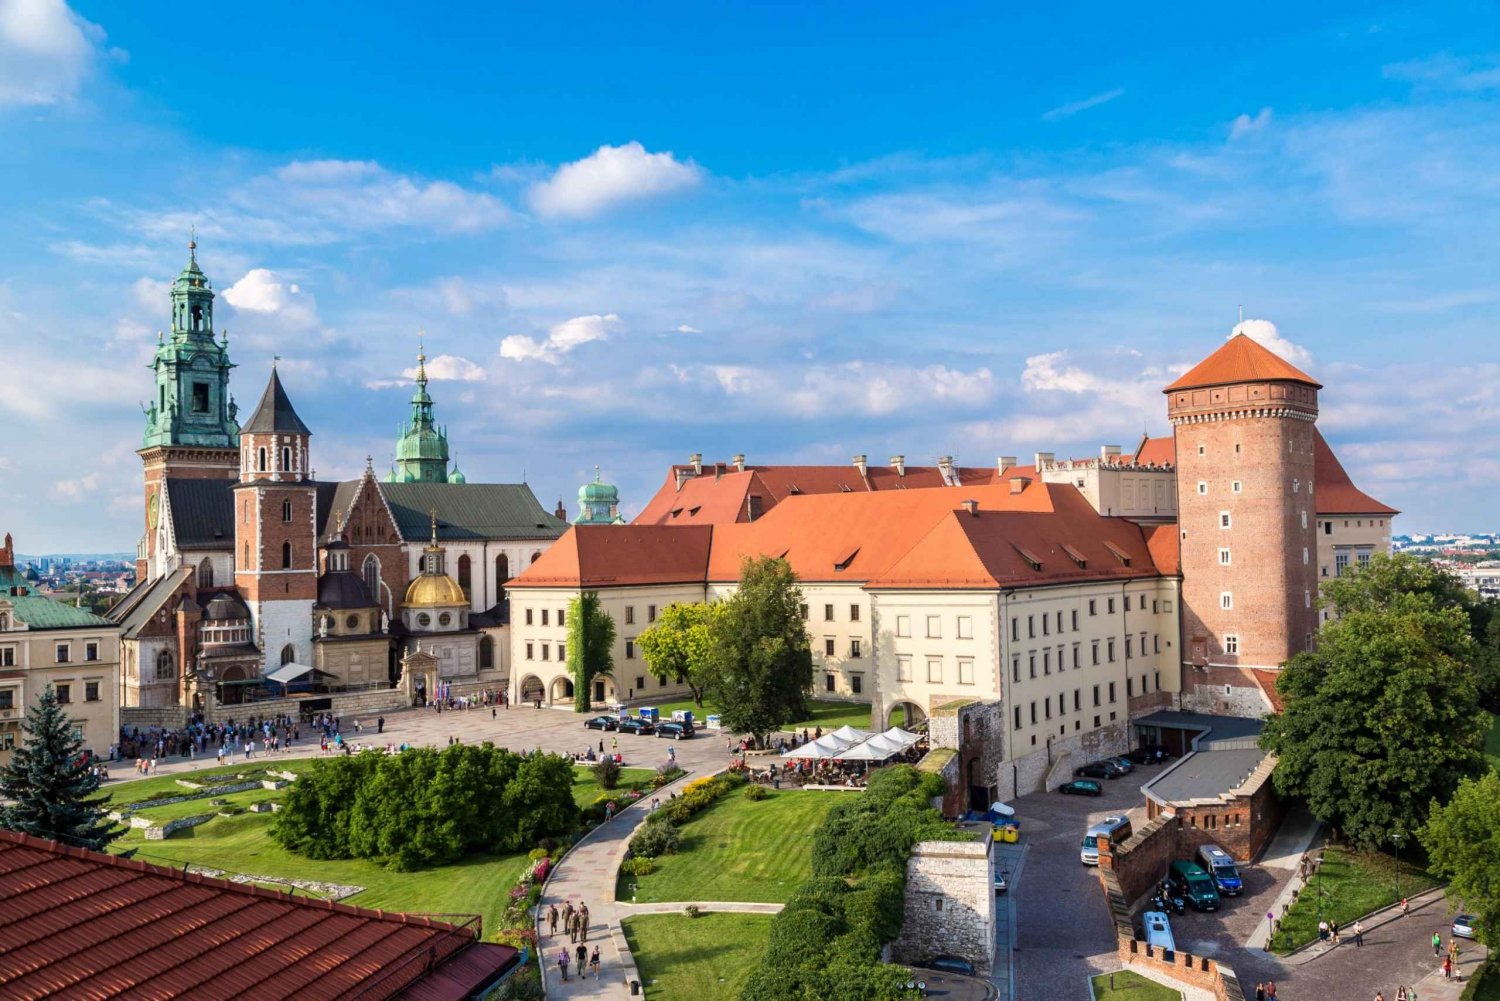 Krakova: Wawelin linna, katedraali, suolakaivos ja lounas.